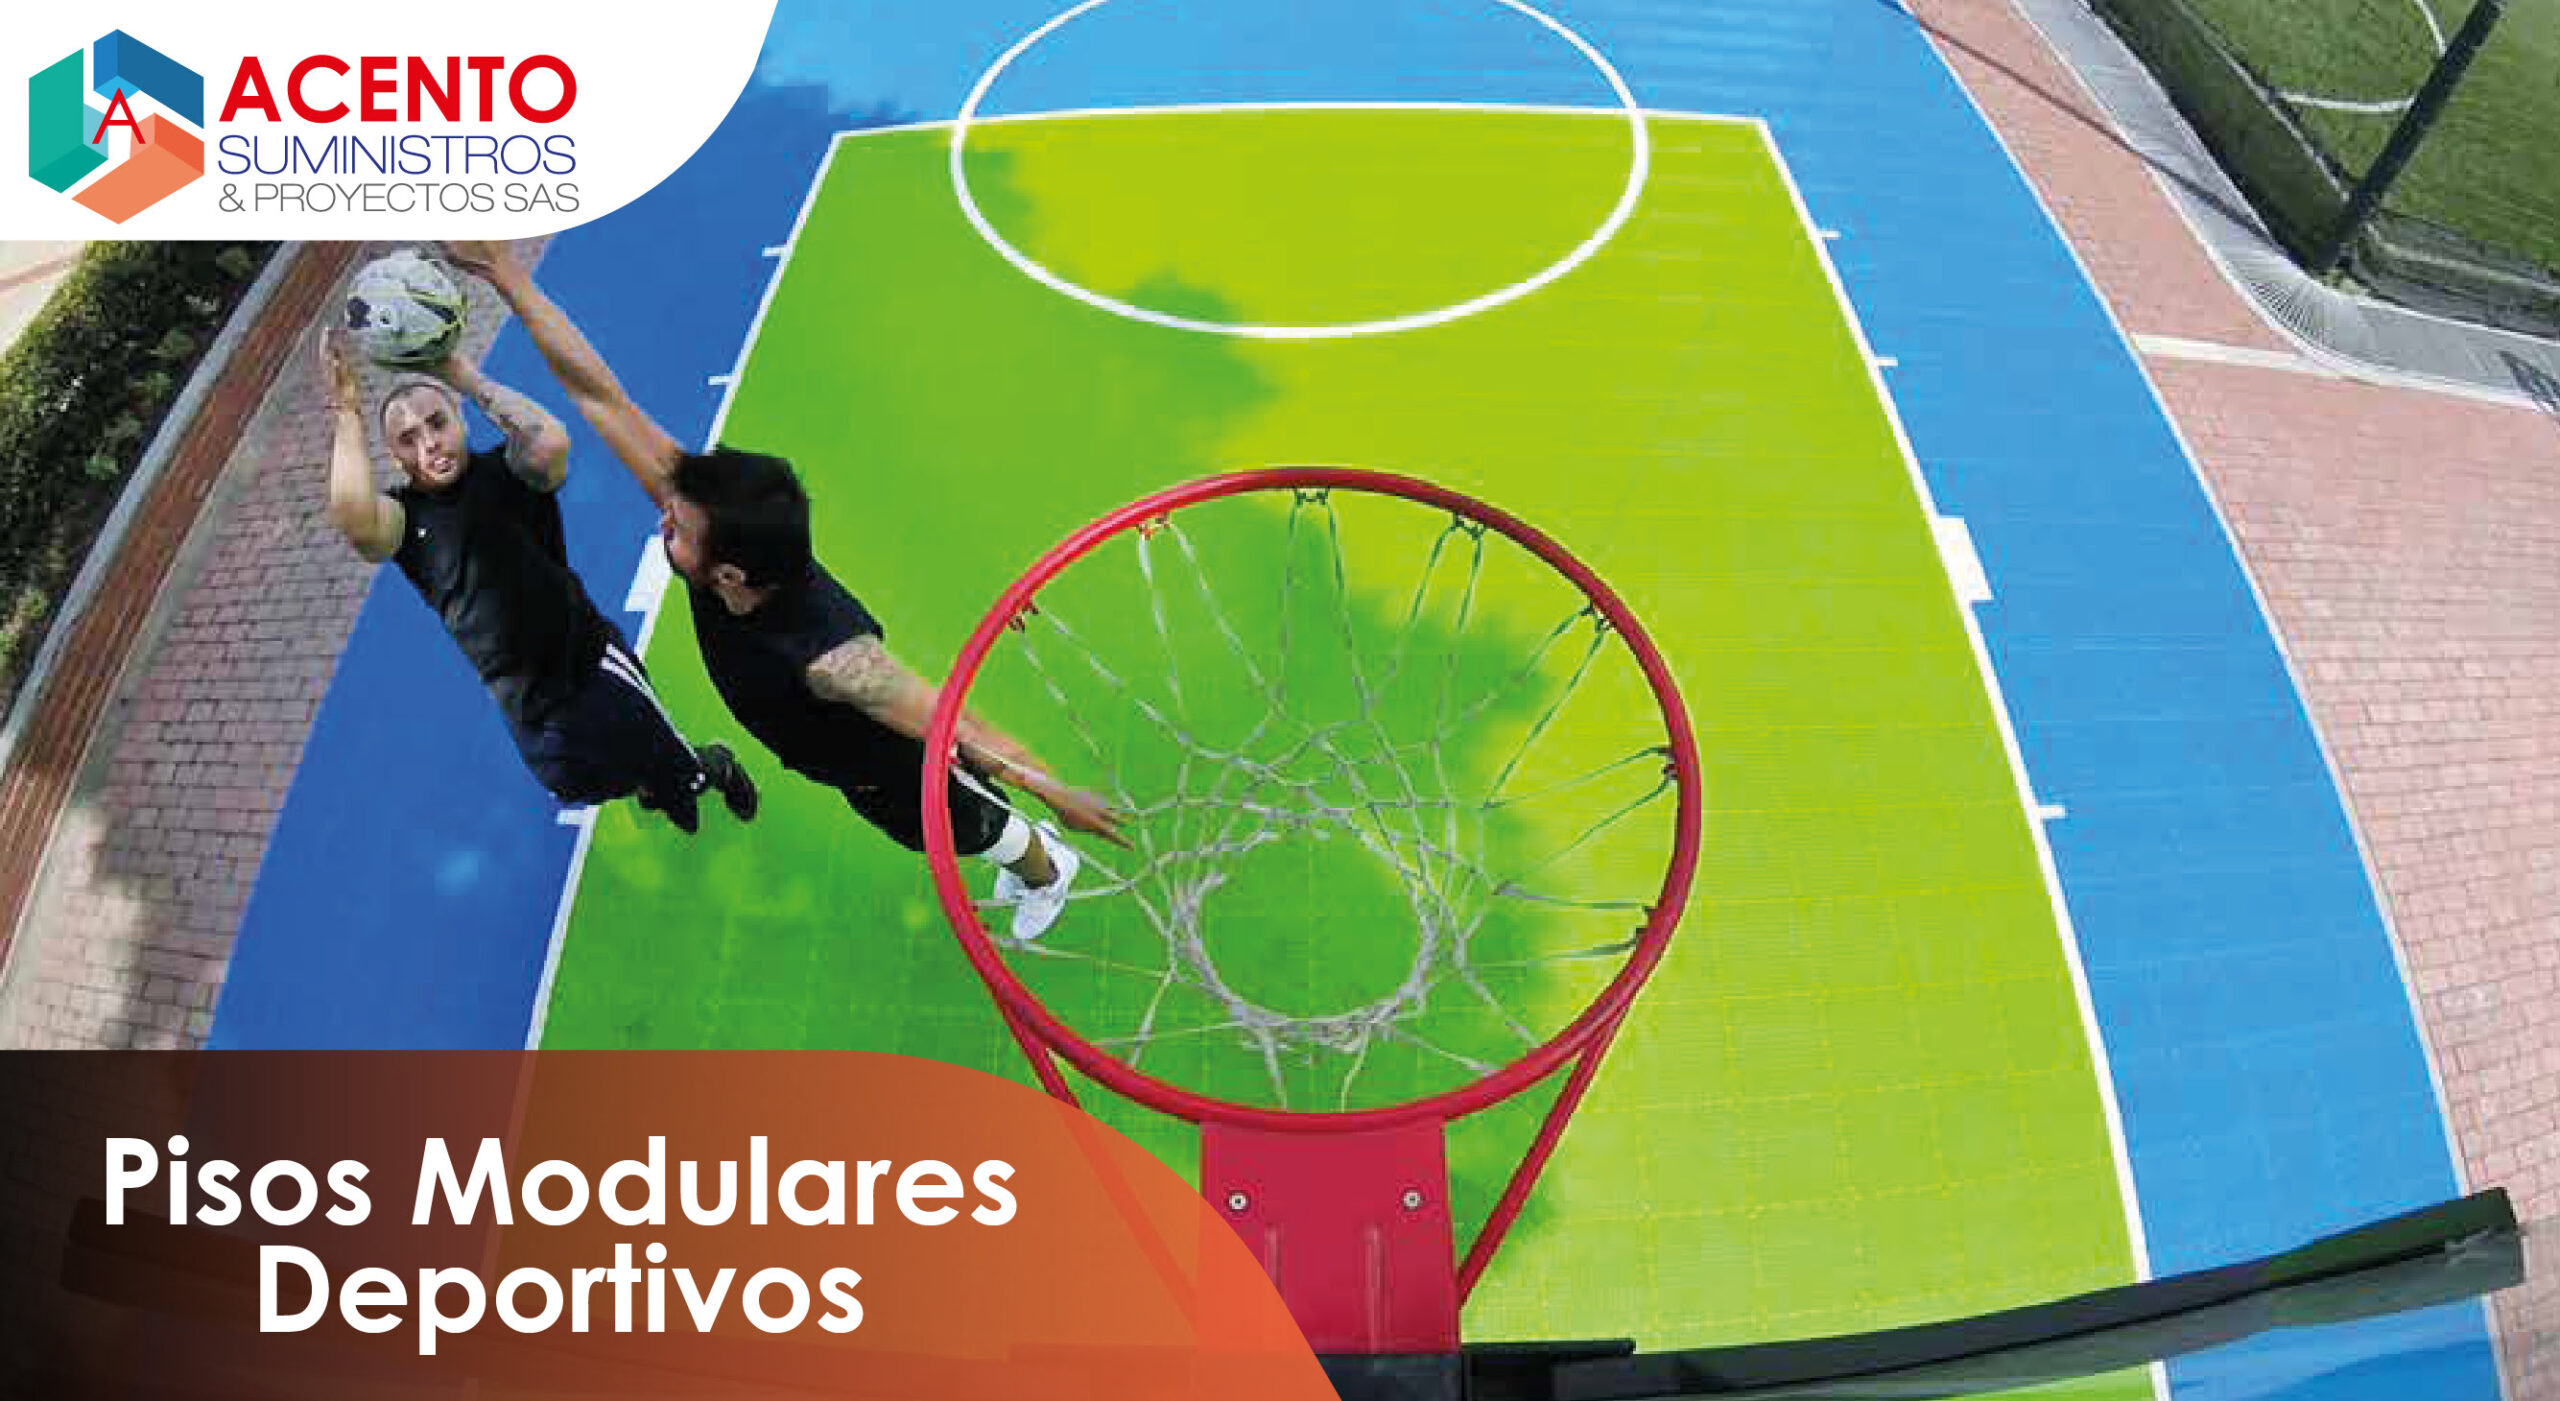 Suministros de pisos modulares alta mente resistentes en areas deportivas exteriores e interiores en Colombia Acento Suministros